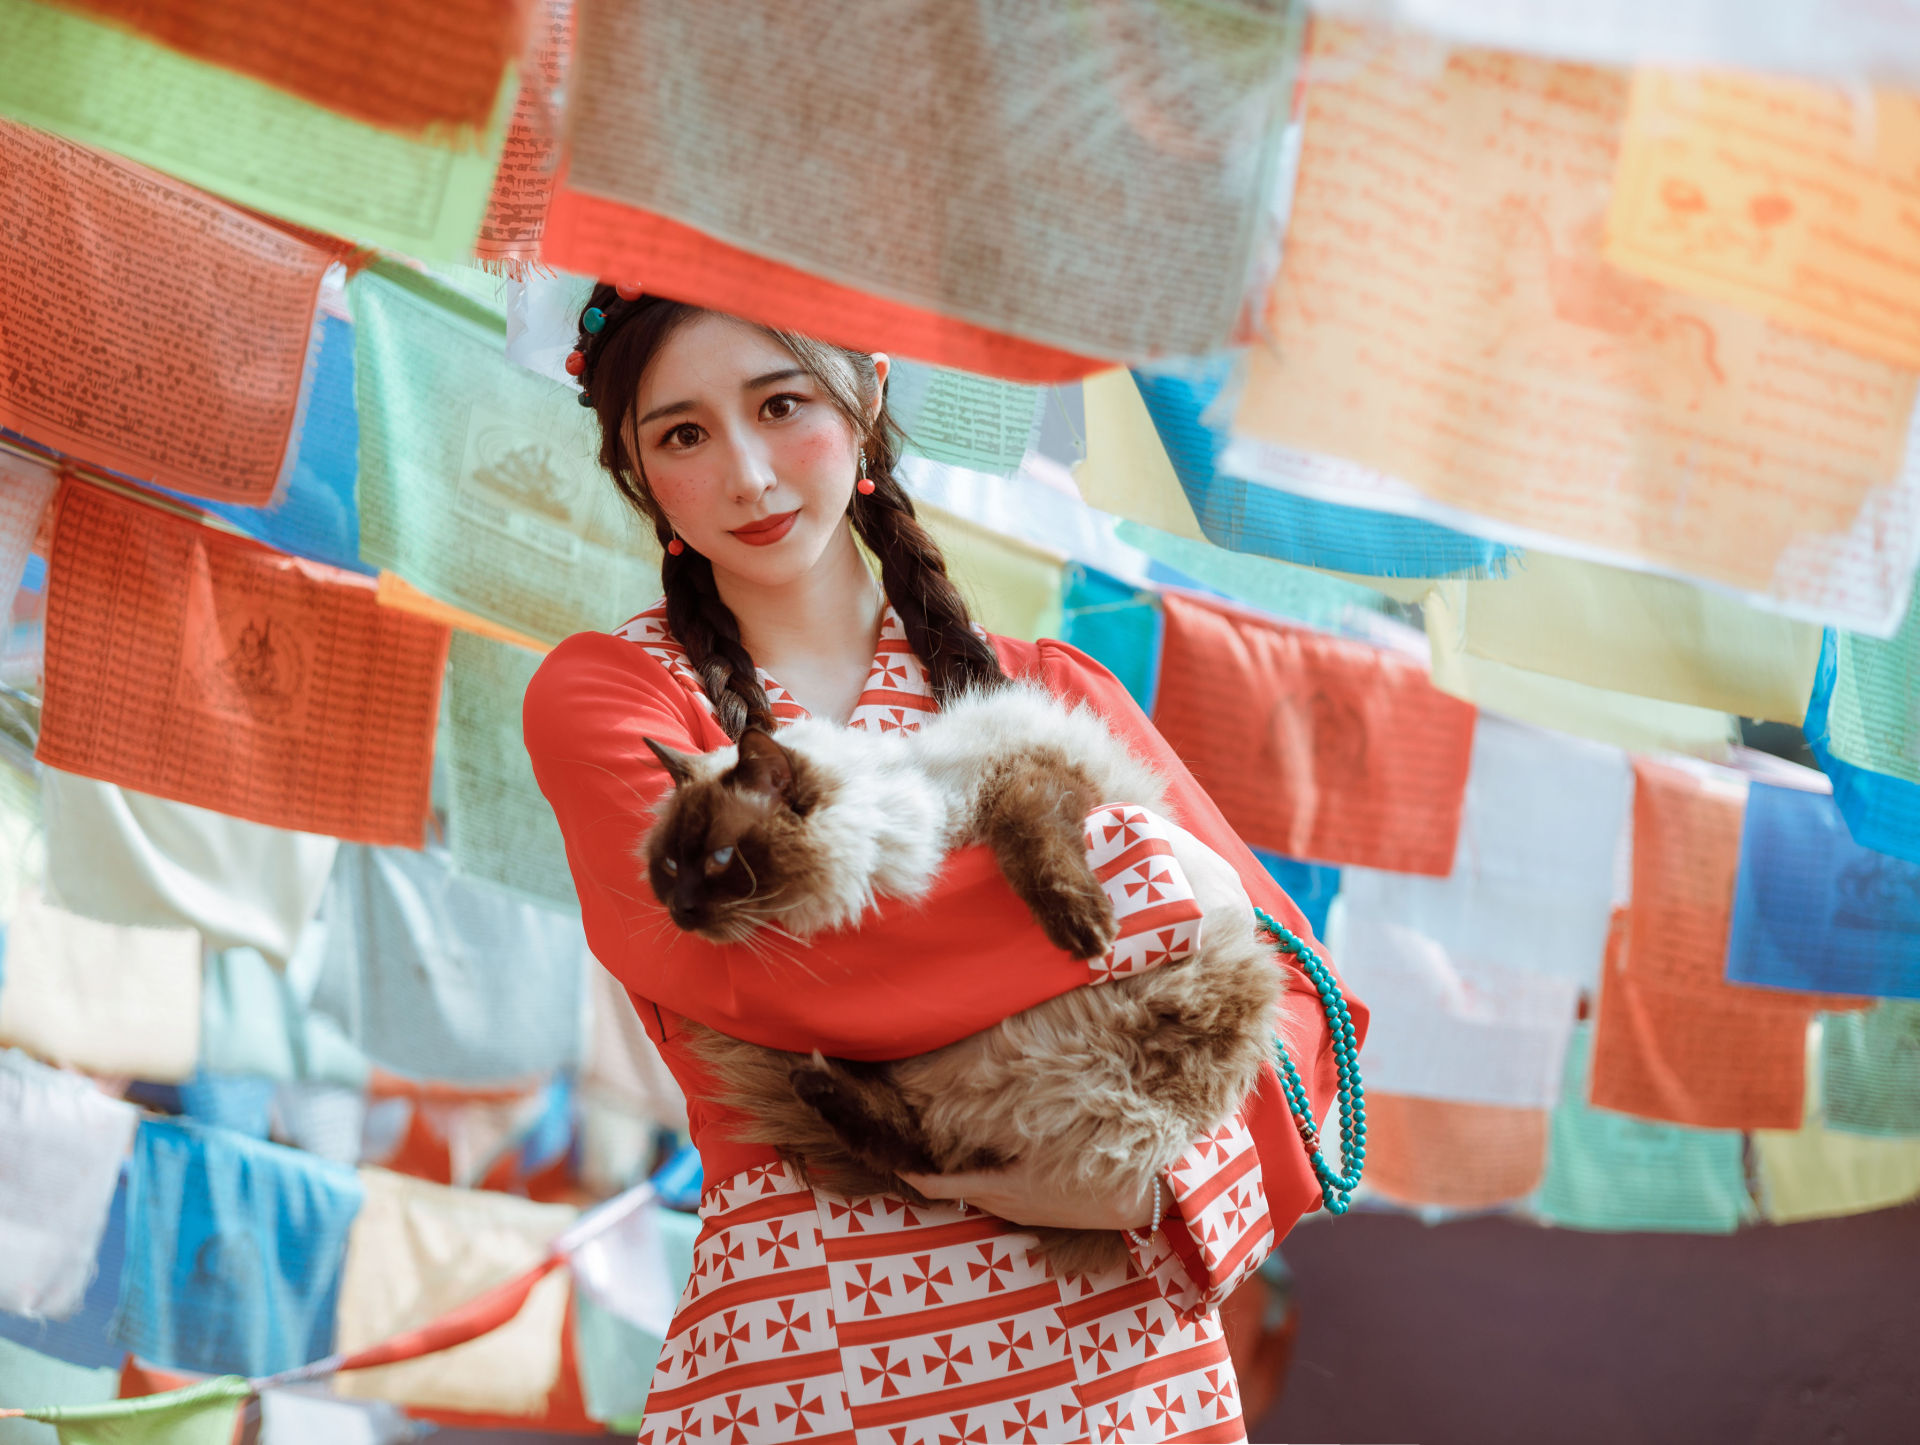 藏族公主 写真 民族风 红色 少女 精美